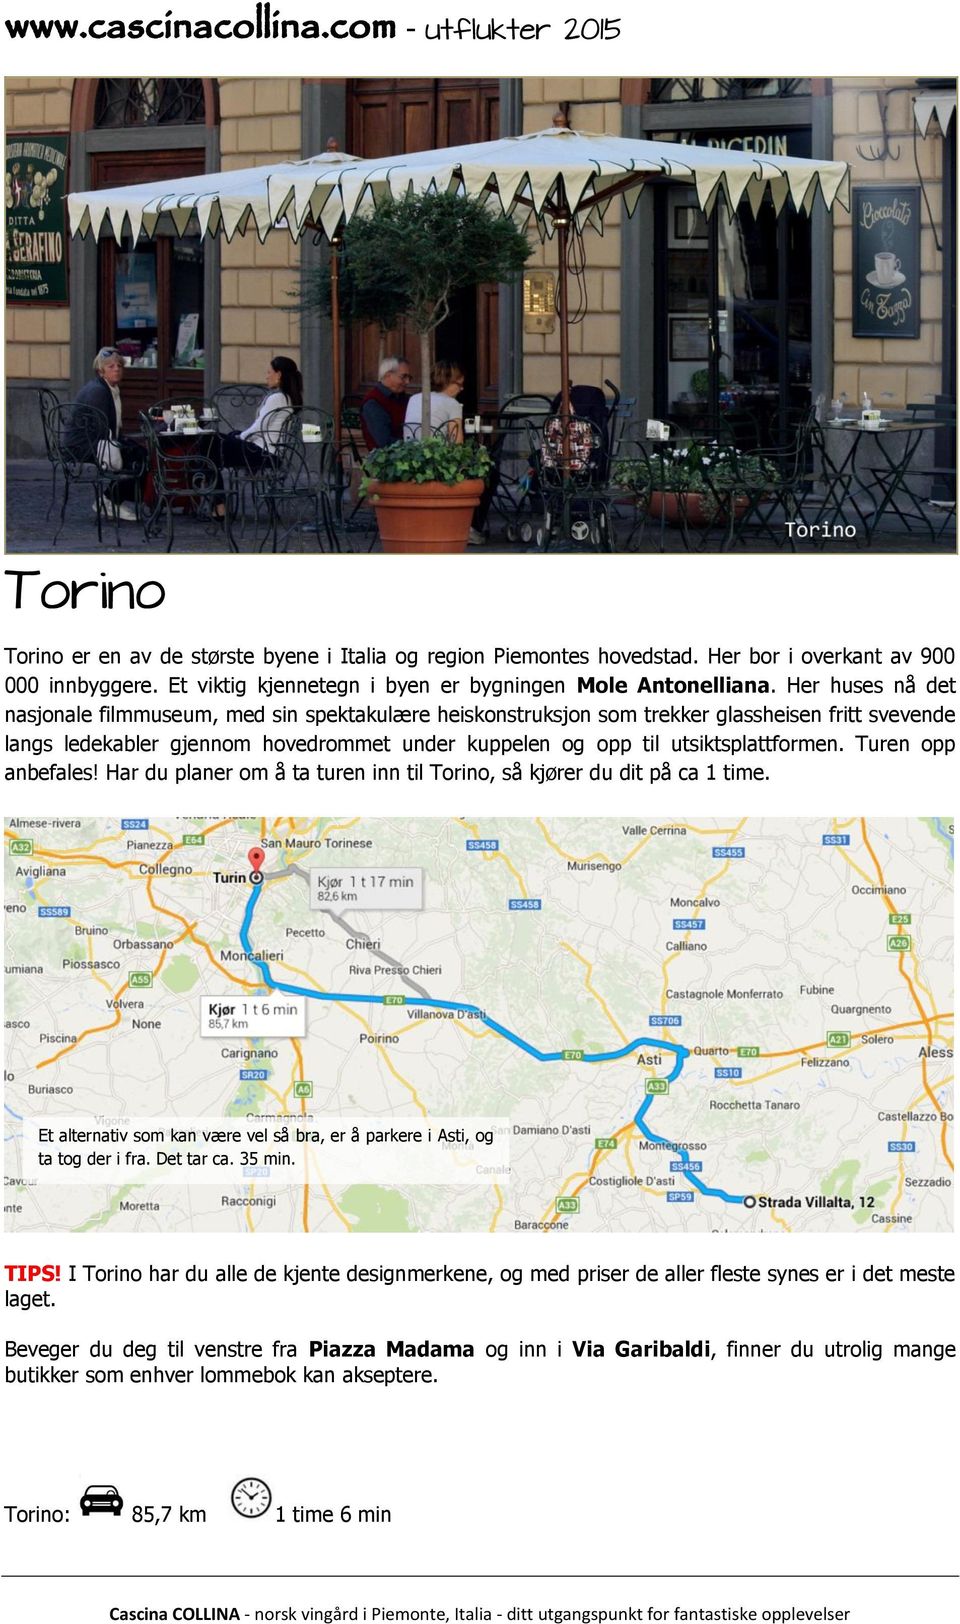 Turen opp anbefales! Har du planer om å ta turen inn til Torino, så kjører du dit på ca 1 time. Et alternativ som kan være vel så bra, er å parkere i Asti, og ta tog der i fra. Det tar ca. 35 min.